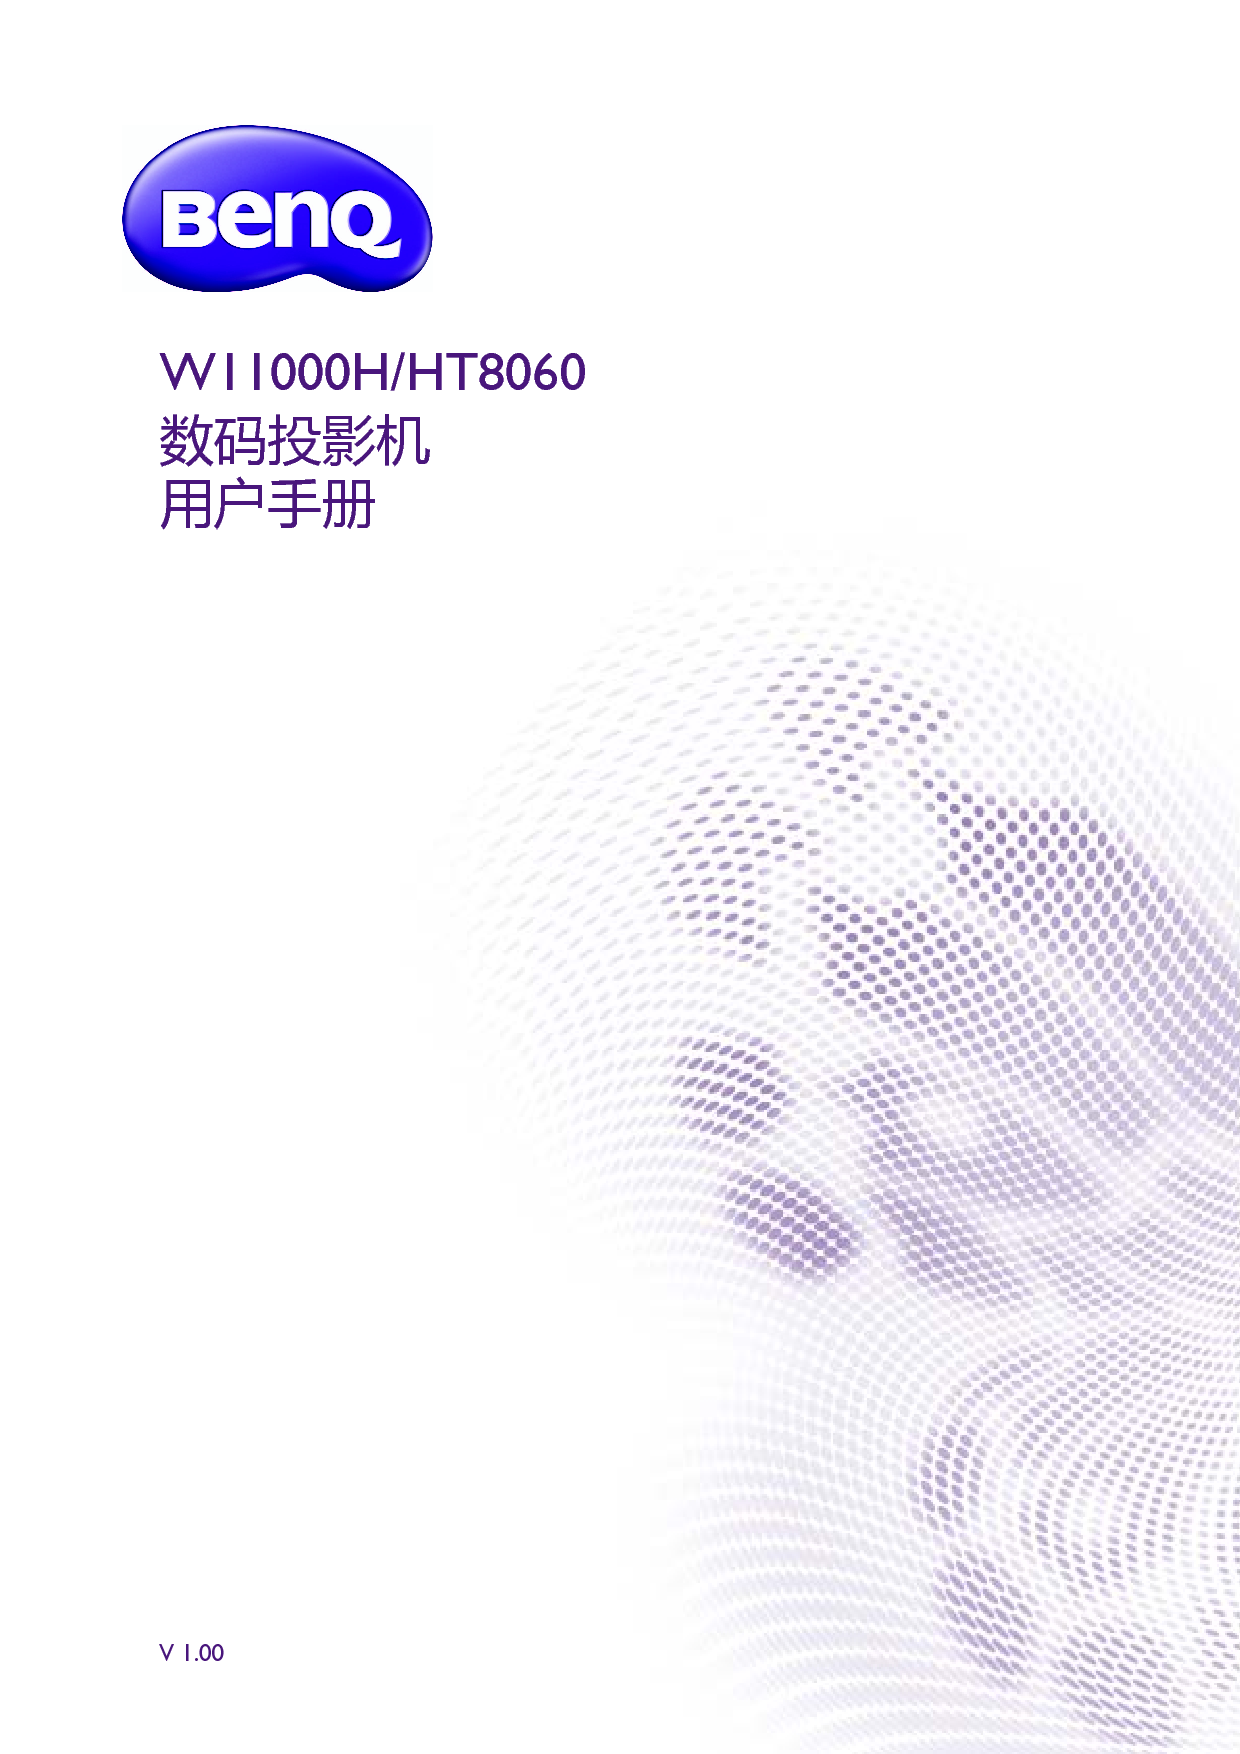 明基 Benq HT8060, W11000H 用户手册 封面